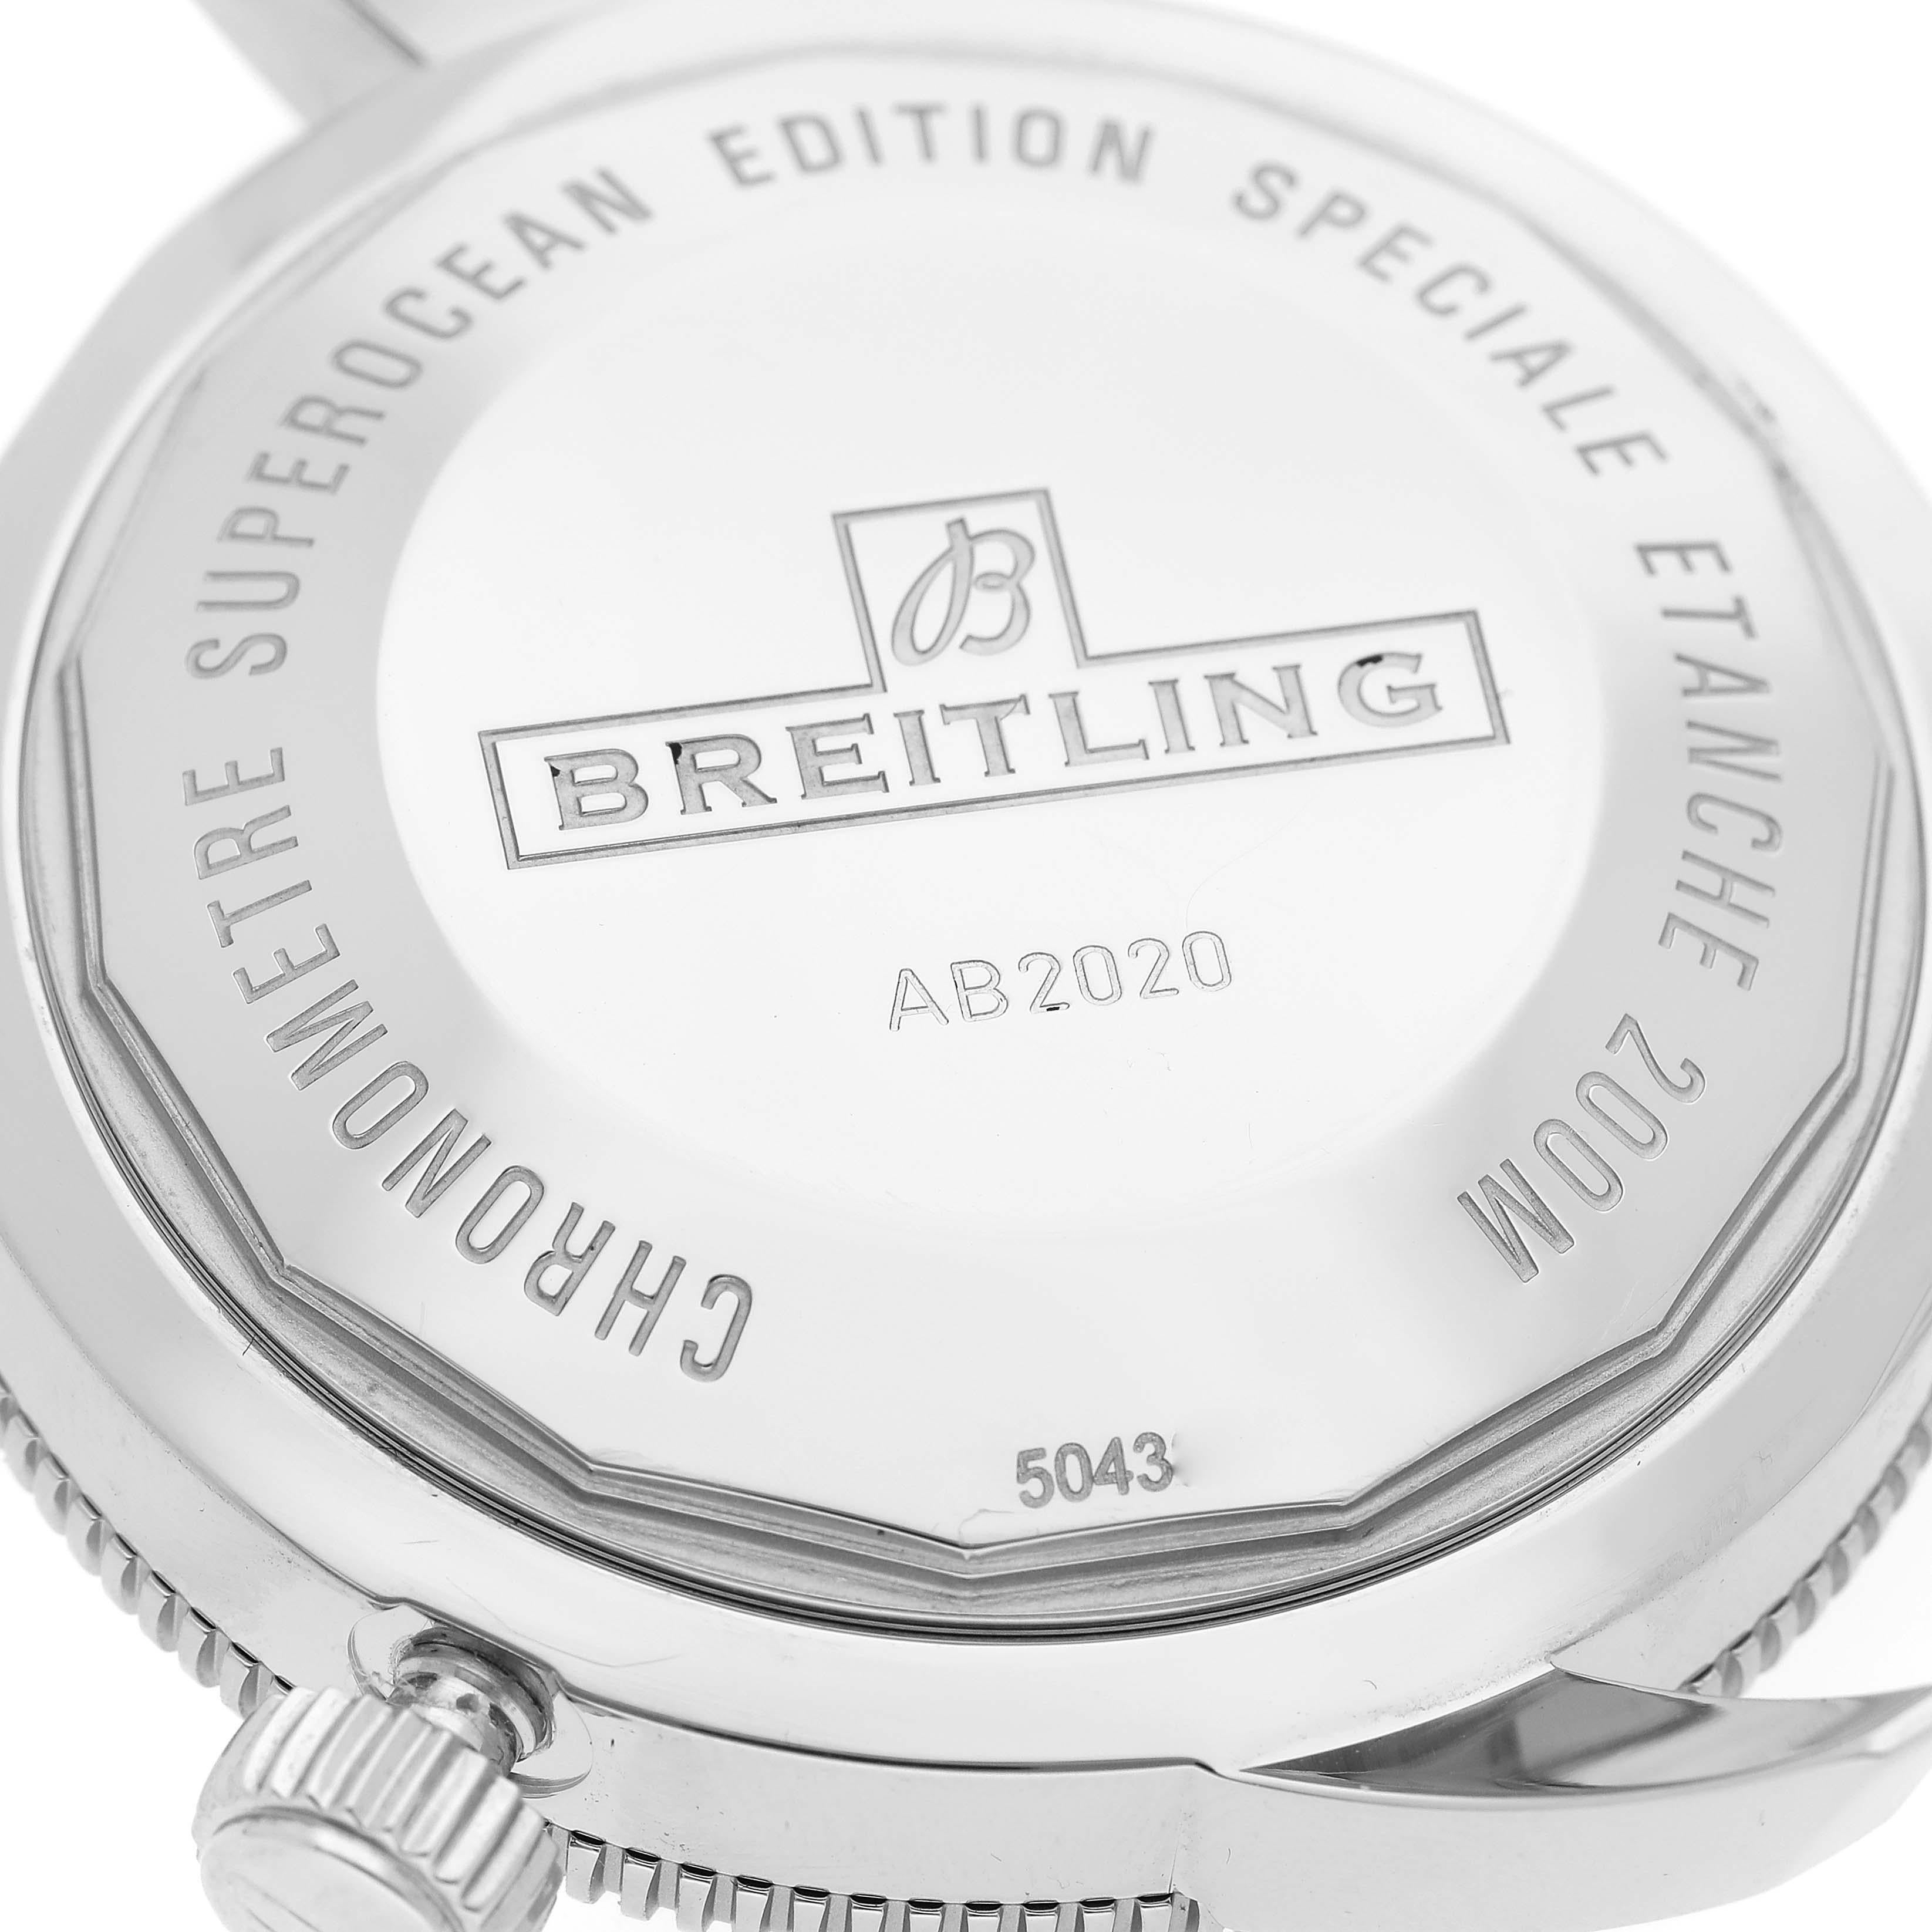 Breitling Superocean Heritage 46 Black Dial Steel Mens Watch AB2020 Box Card 3